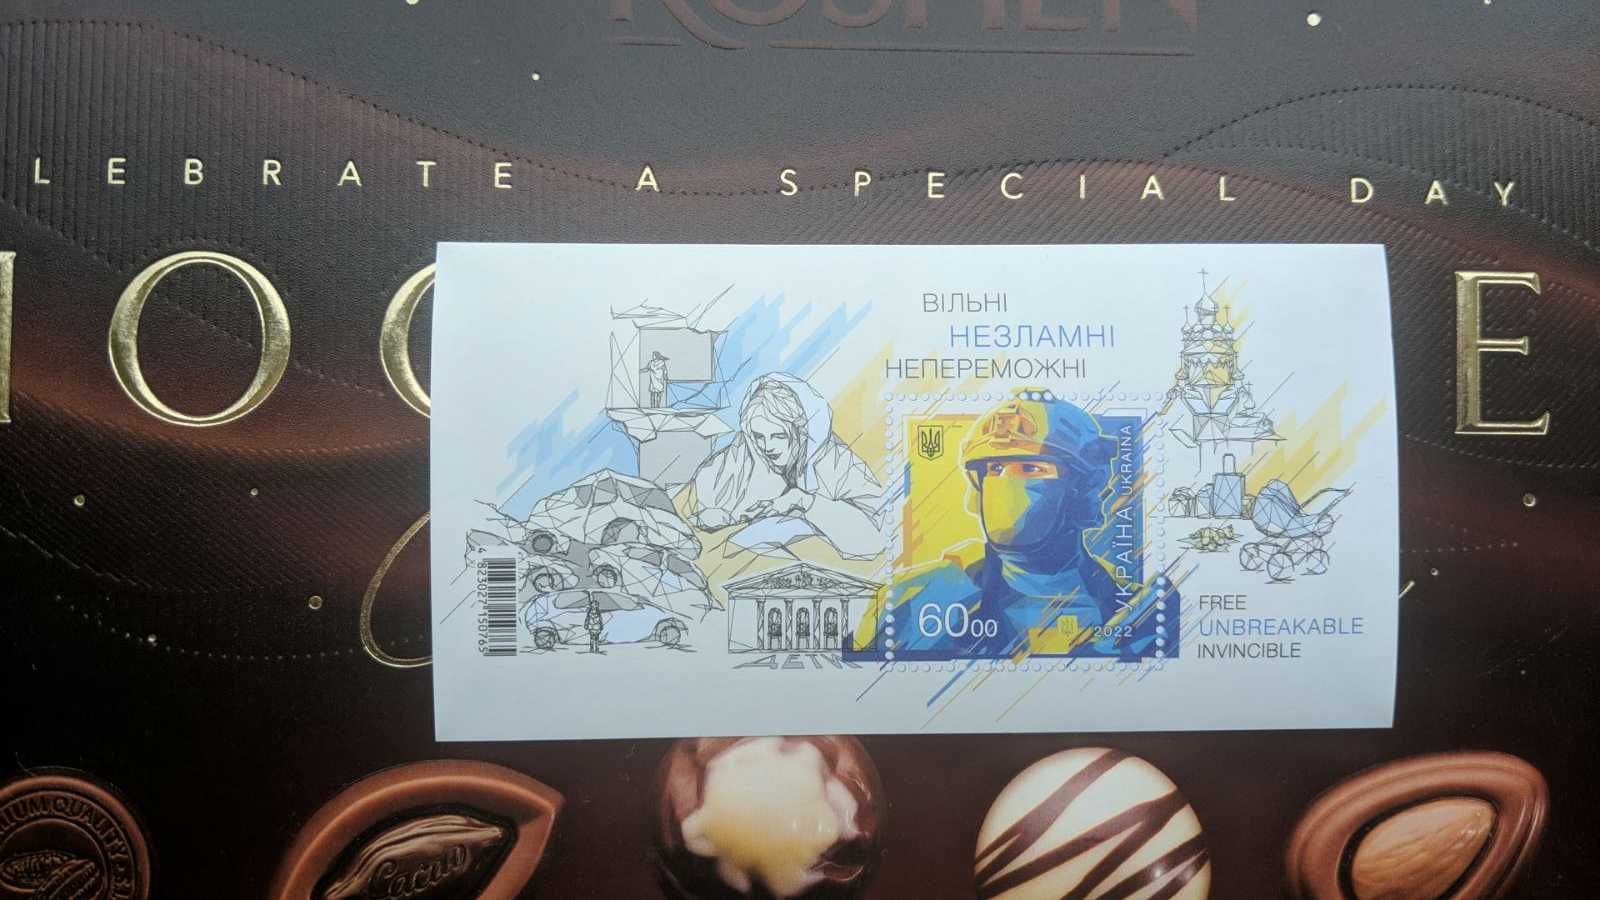 Ukraina. Pocztowy blok z znaczkiem, koperta "Wolne niezłomne ..."